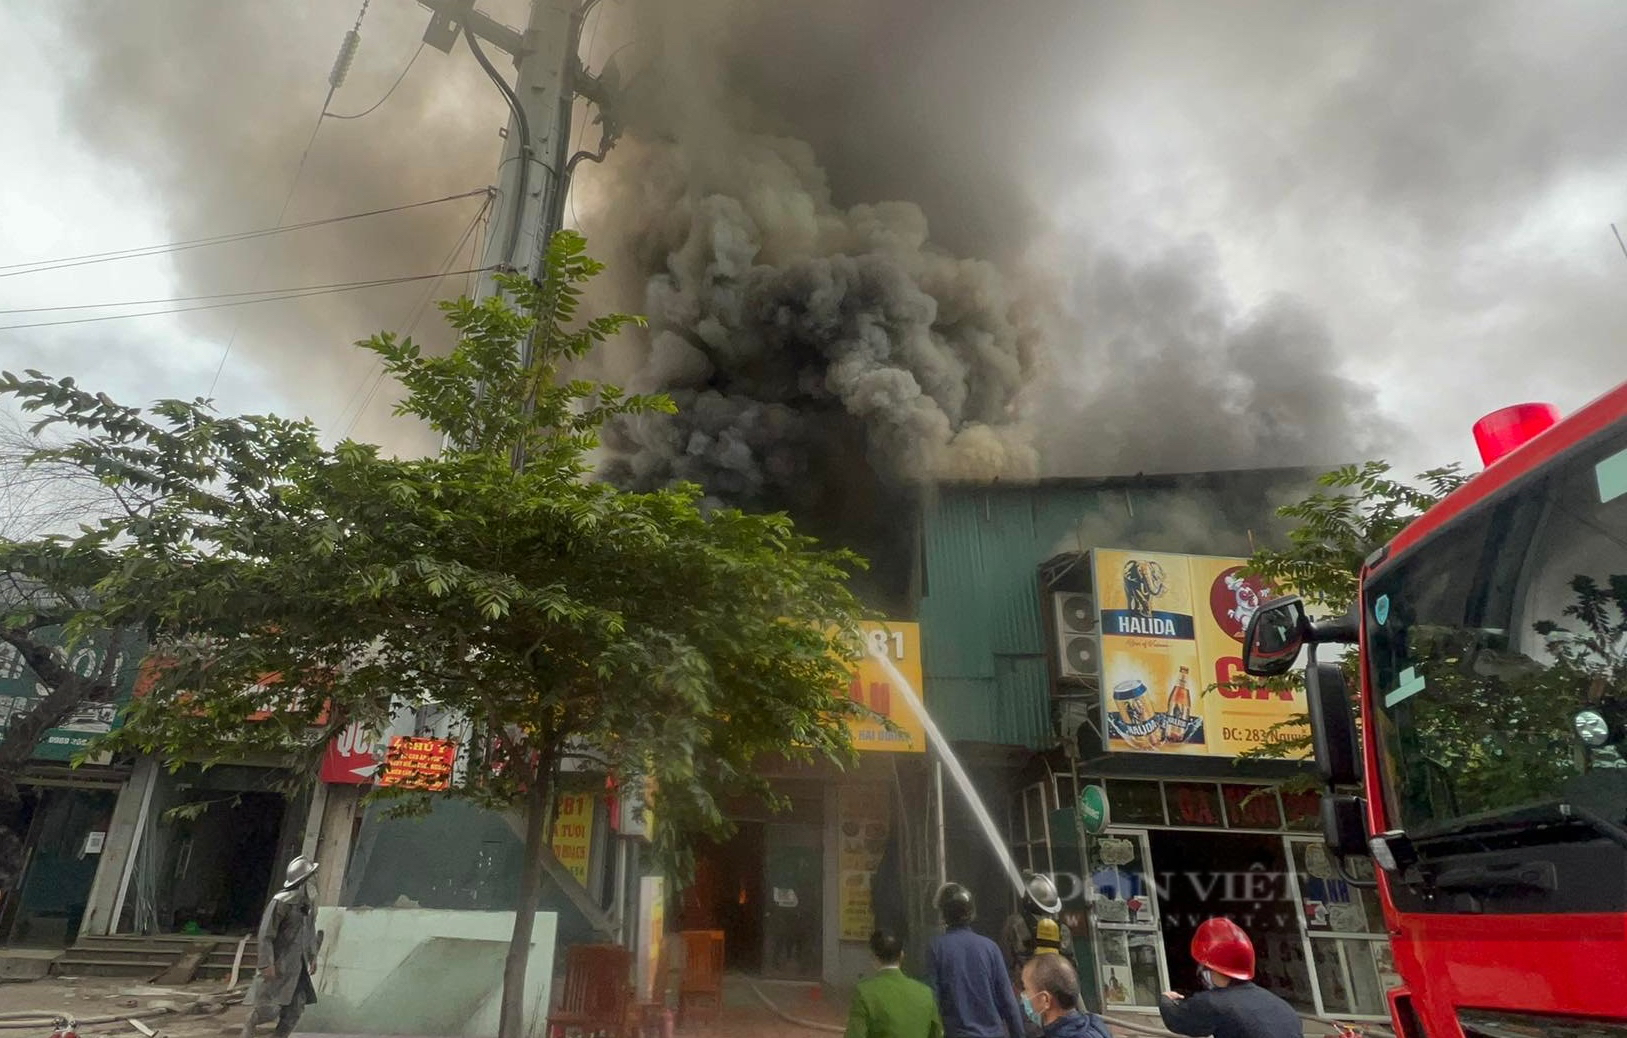 Hiện trường tan hoang sau vụ cháy cực lớn thiêu rụi nhiều cửa hàng trên phố Nguyễn Xiển - Ảnh 1.